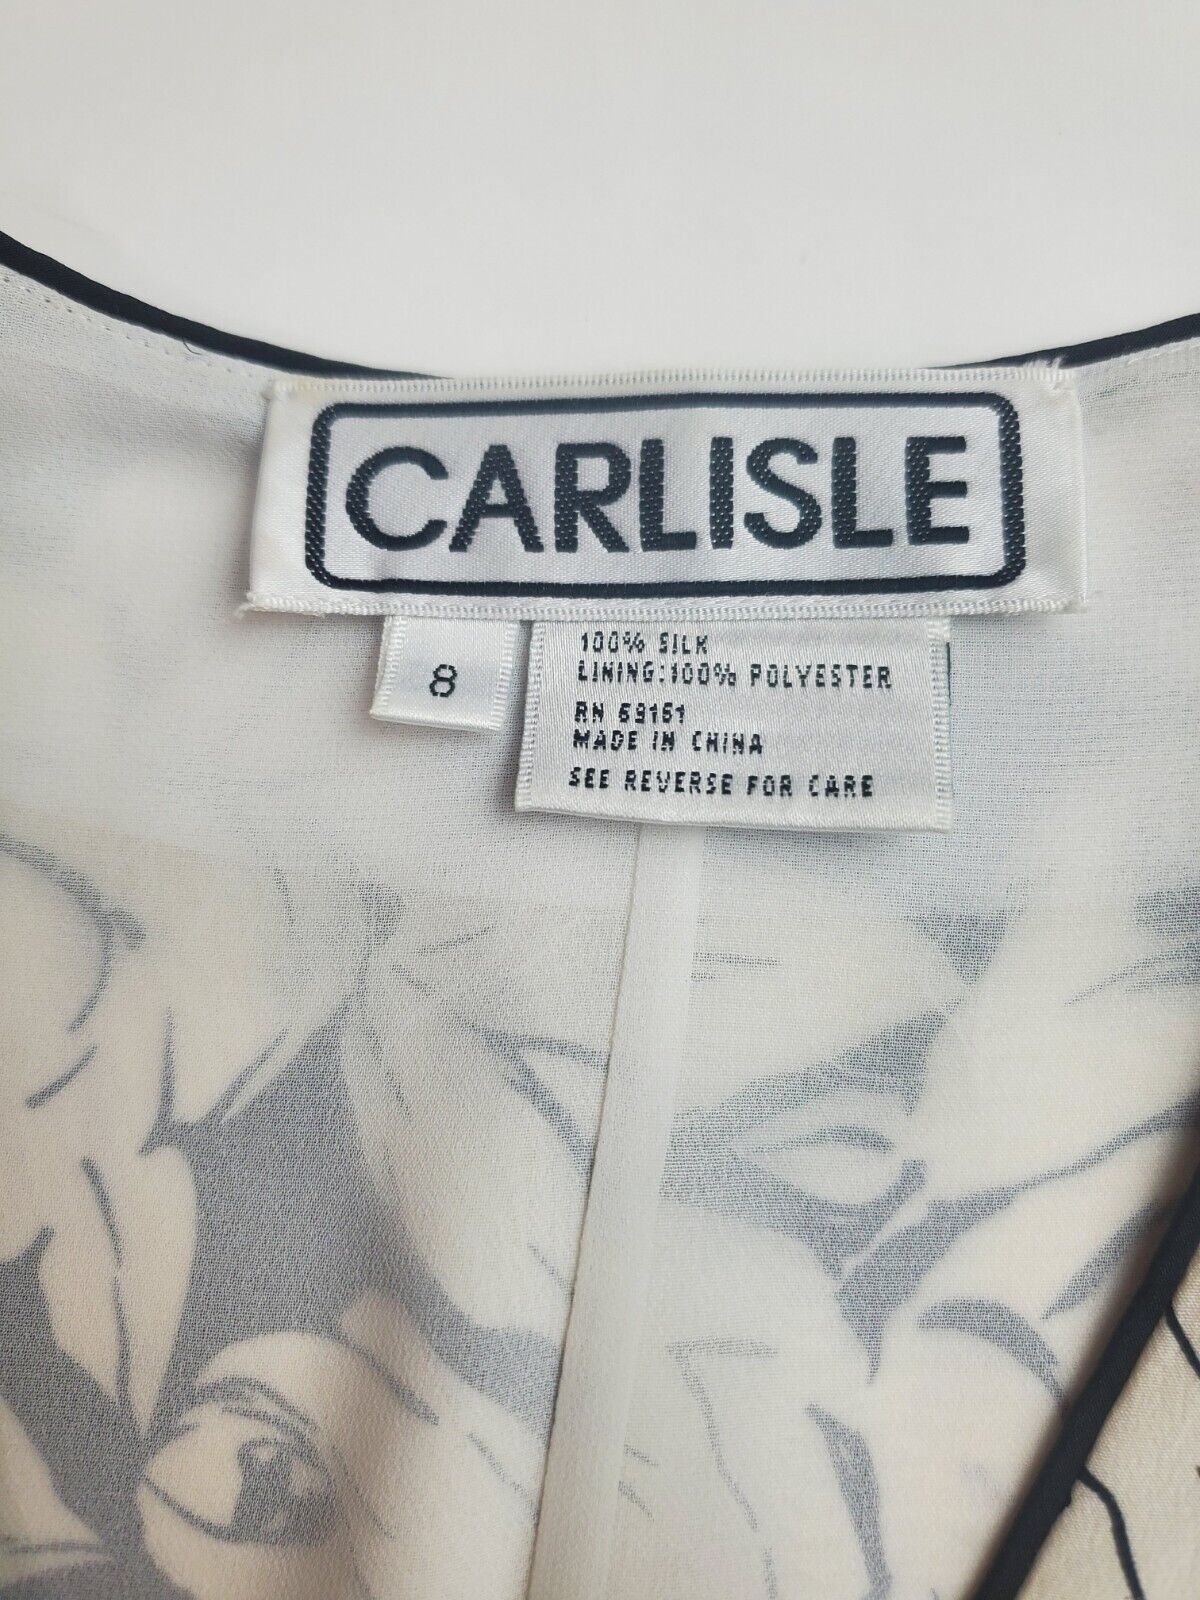 Carlisle 100% Silk Vintage Shoulder Pads Black Wh… - image 11